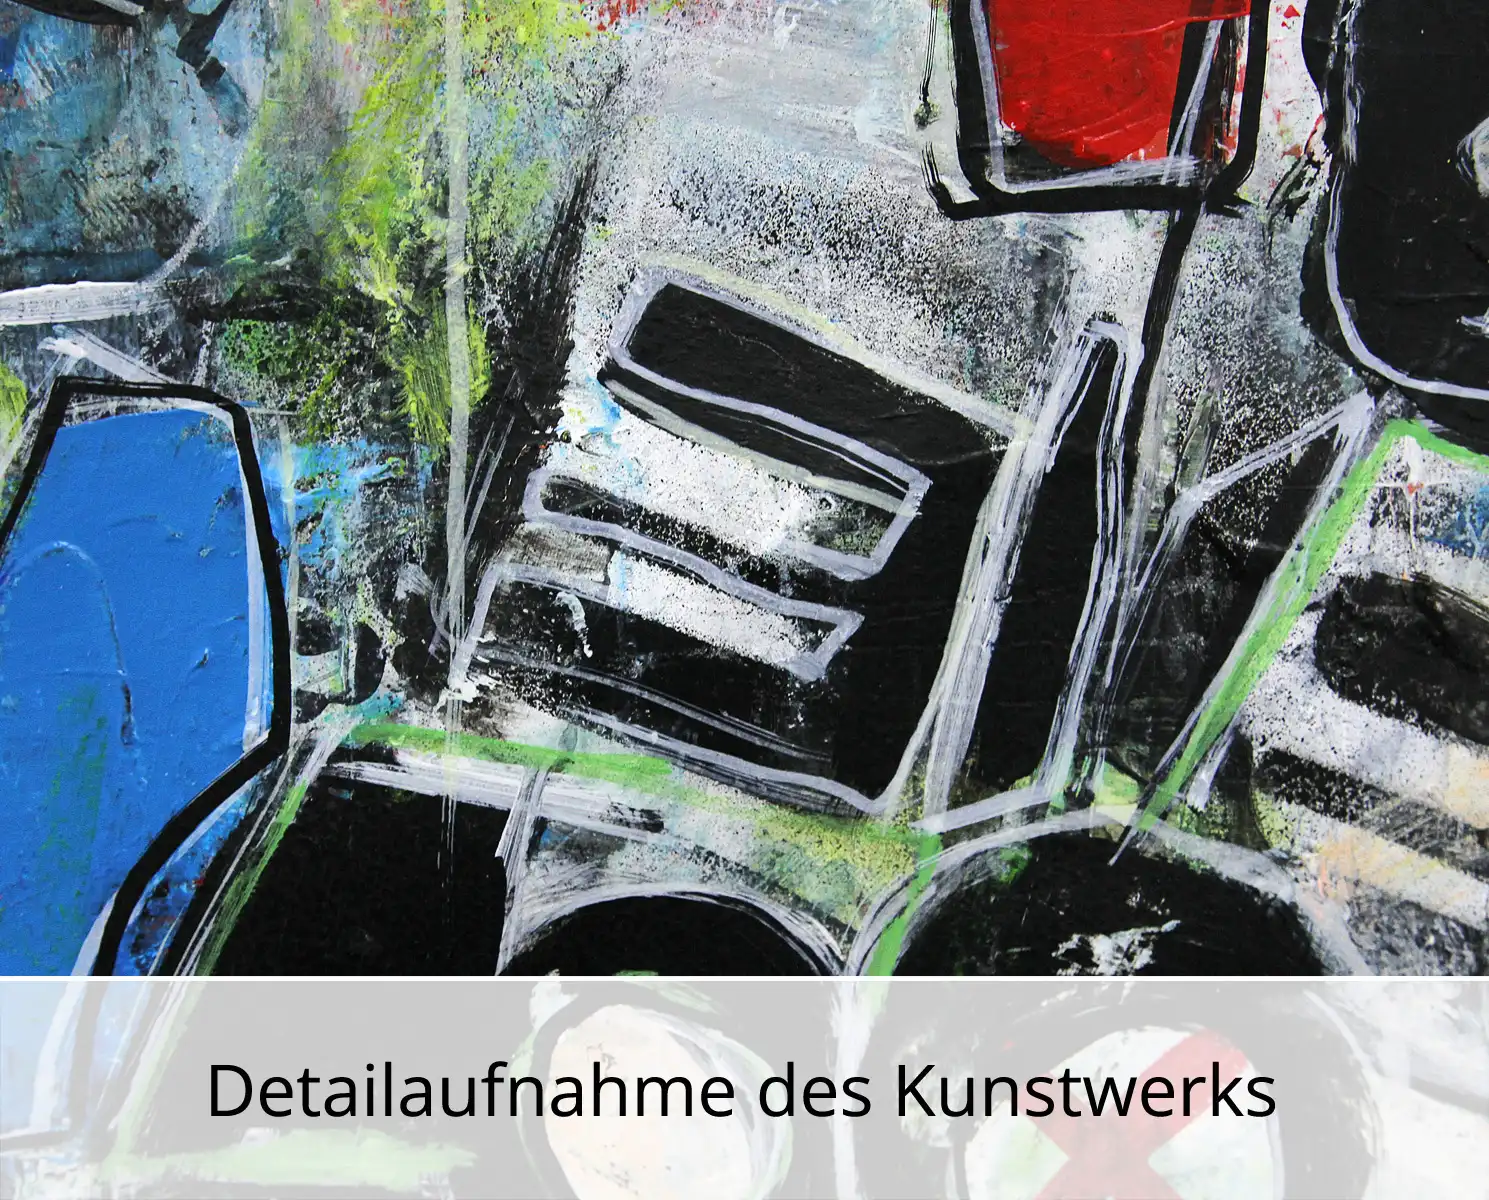 I. Schmidt: "Wenn die Stadt erzählt... Werk Nr. 11", zeitgenössische Grafik/Malerei, Original/Unikat